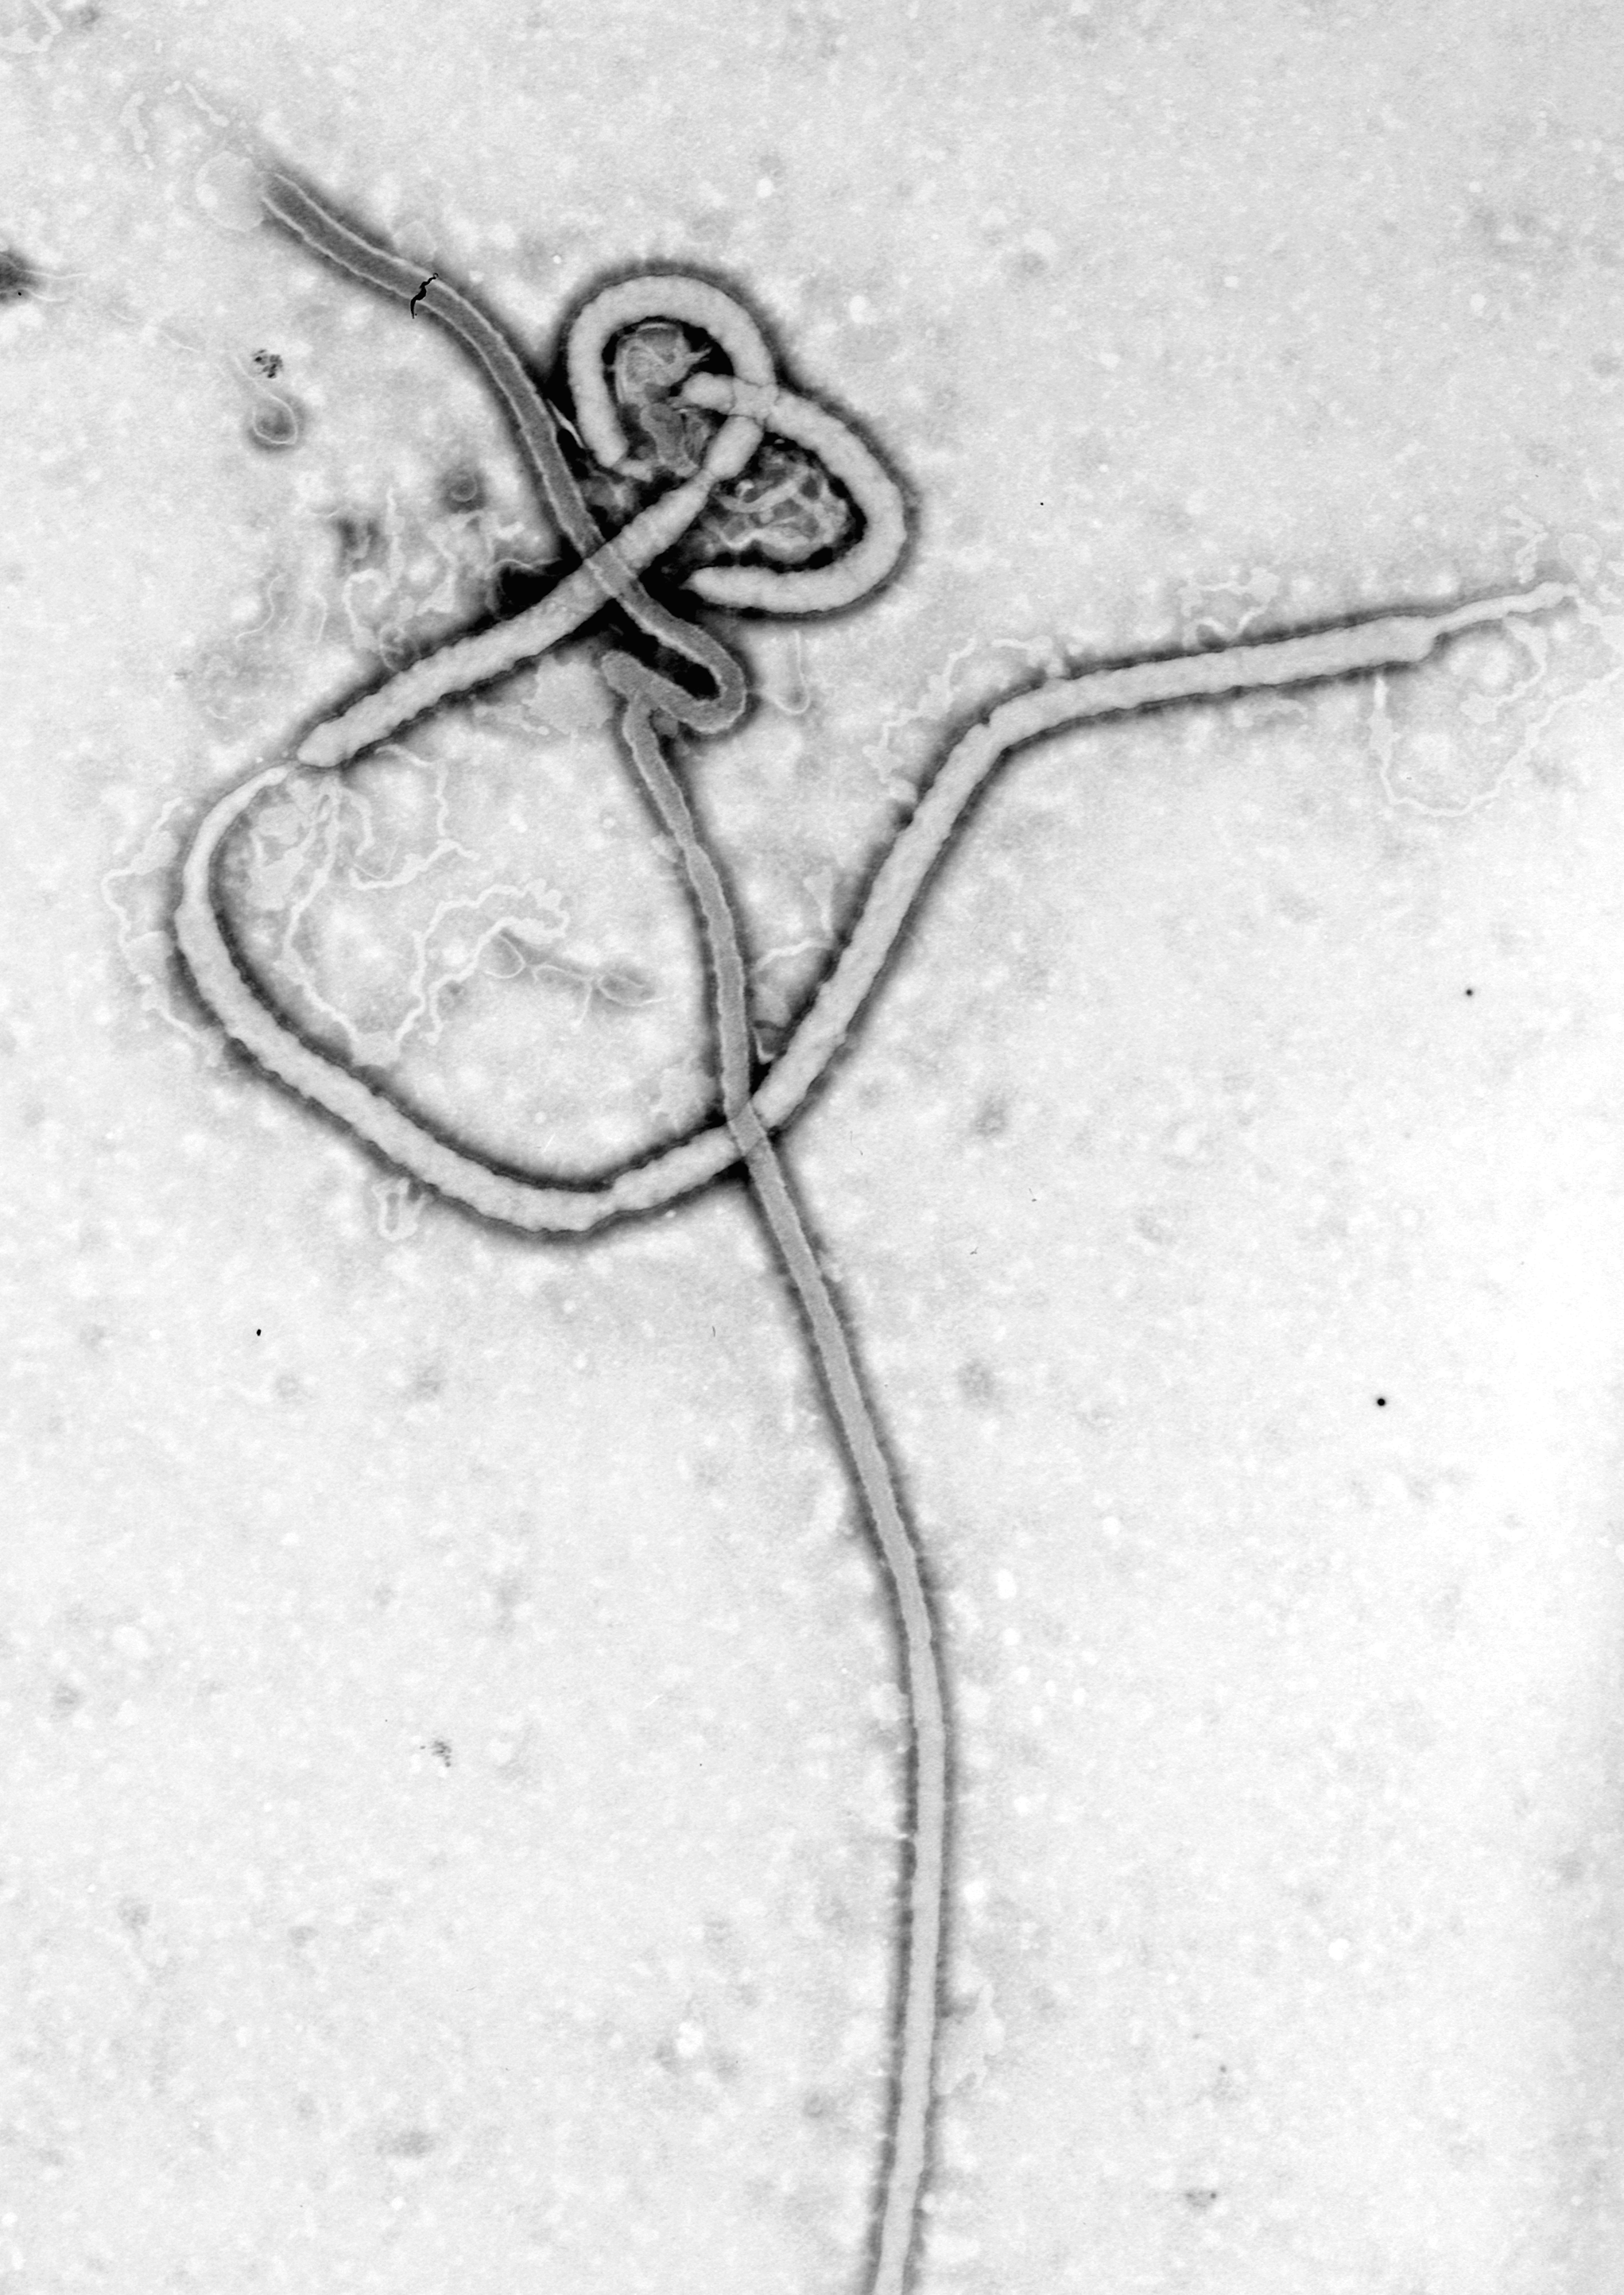 Ebola Virus - similar shape to M13 Bacteriophage